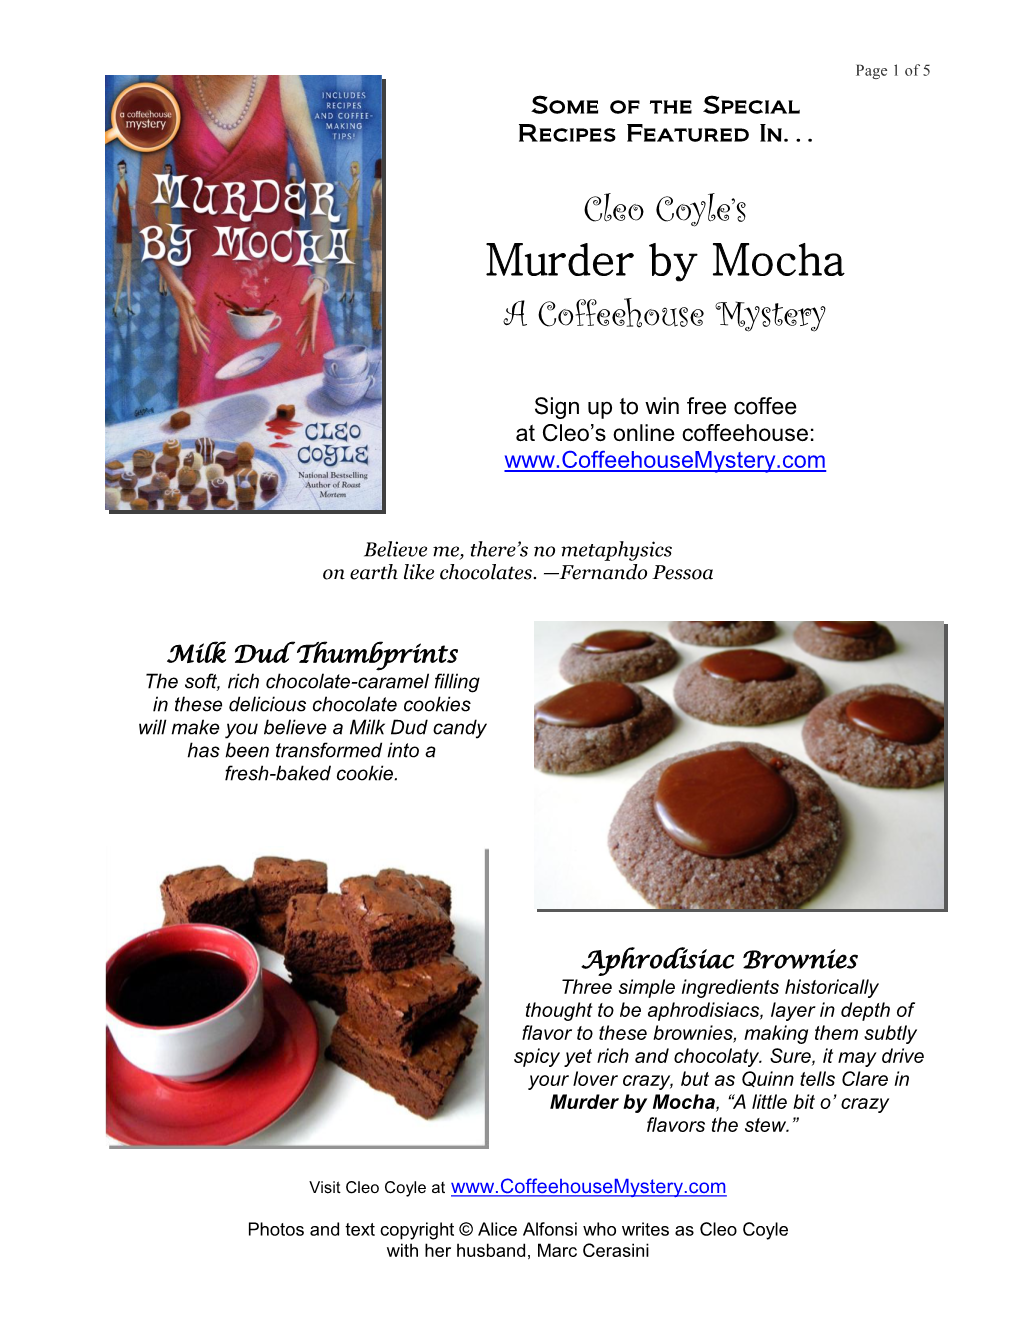 Recipes in Murder by Mocha